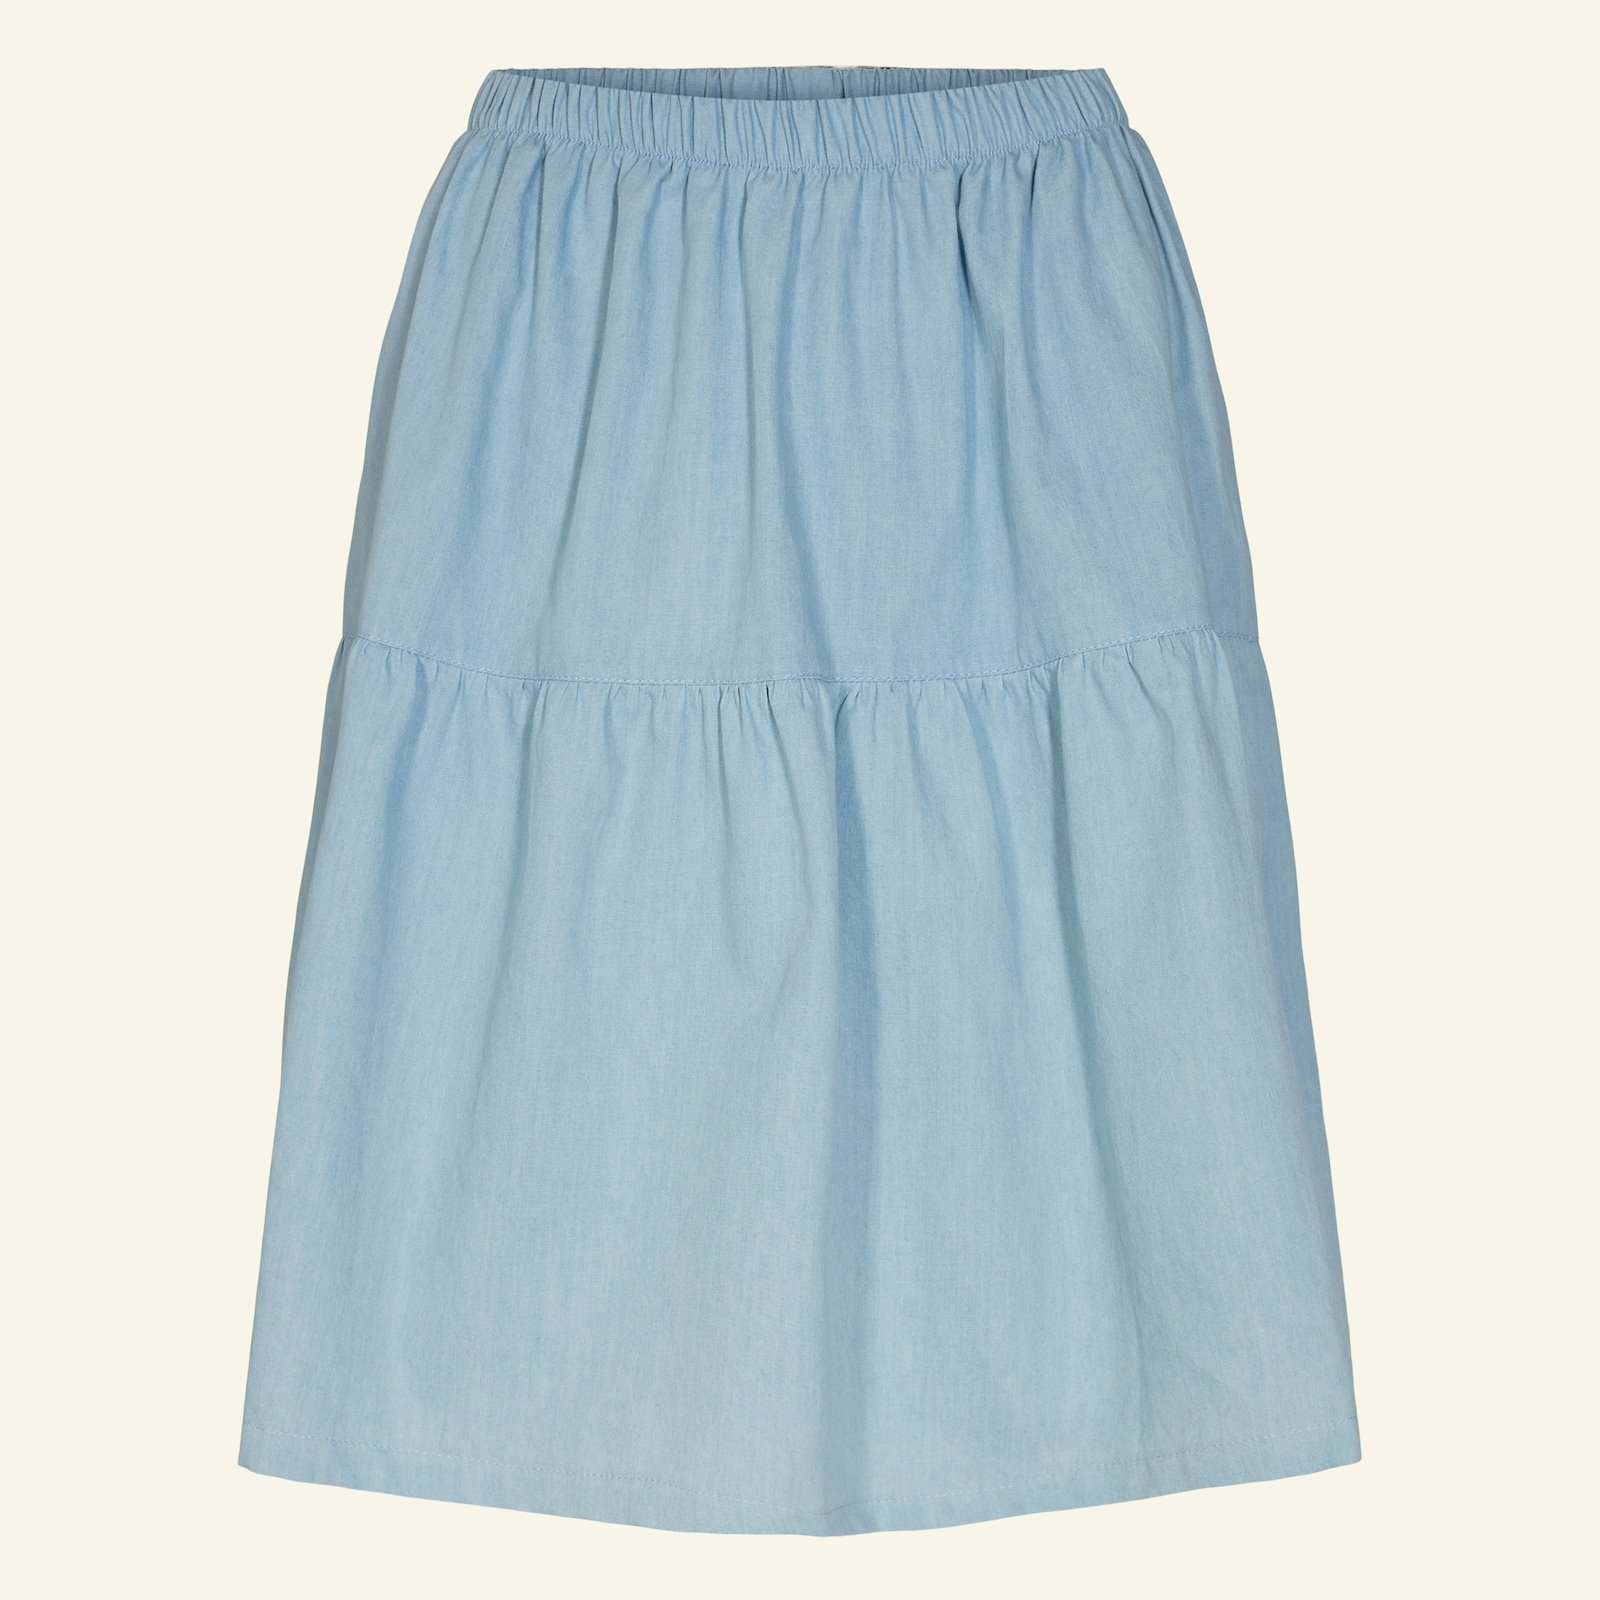 Split level skirt, L p21046_400312_sskit